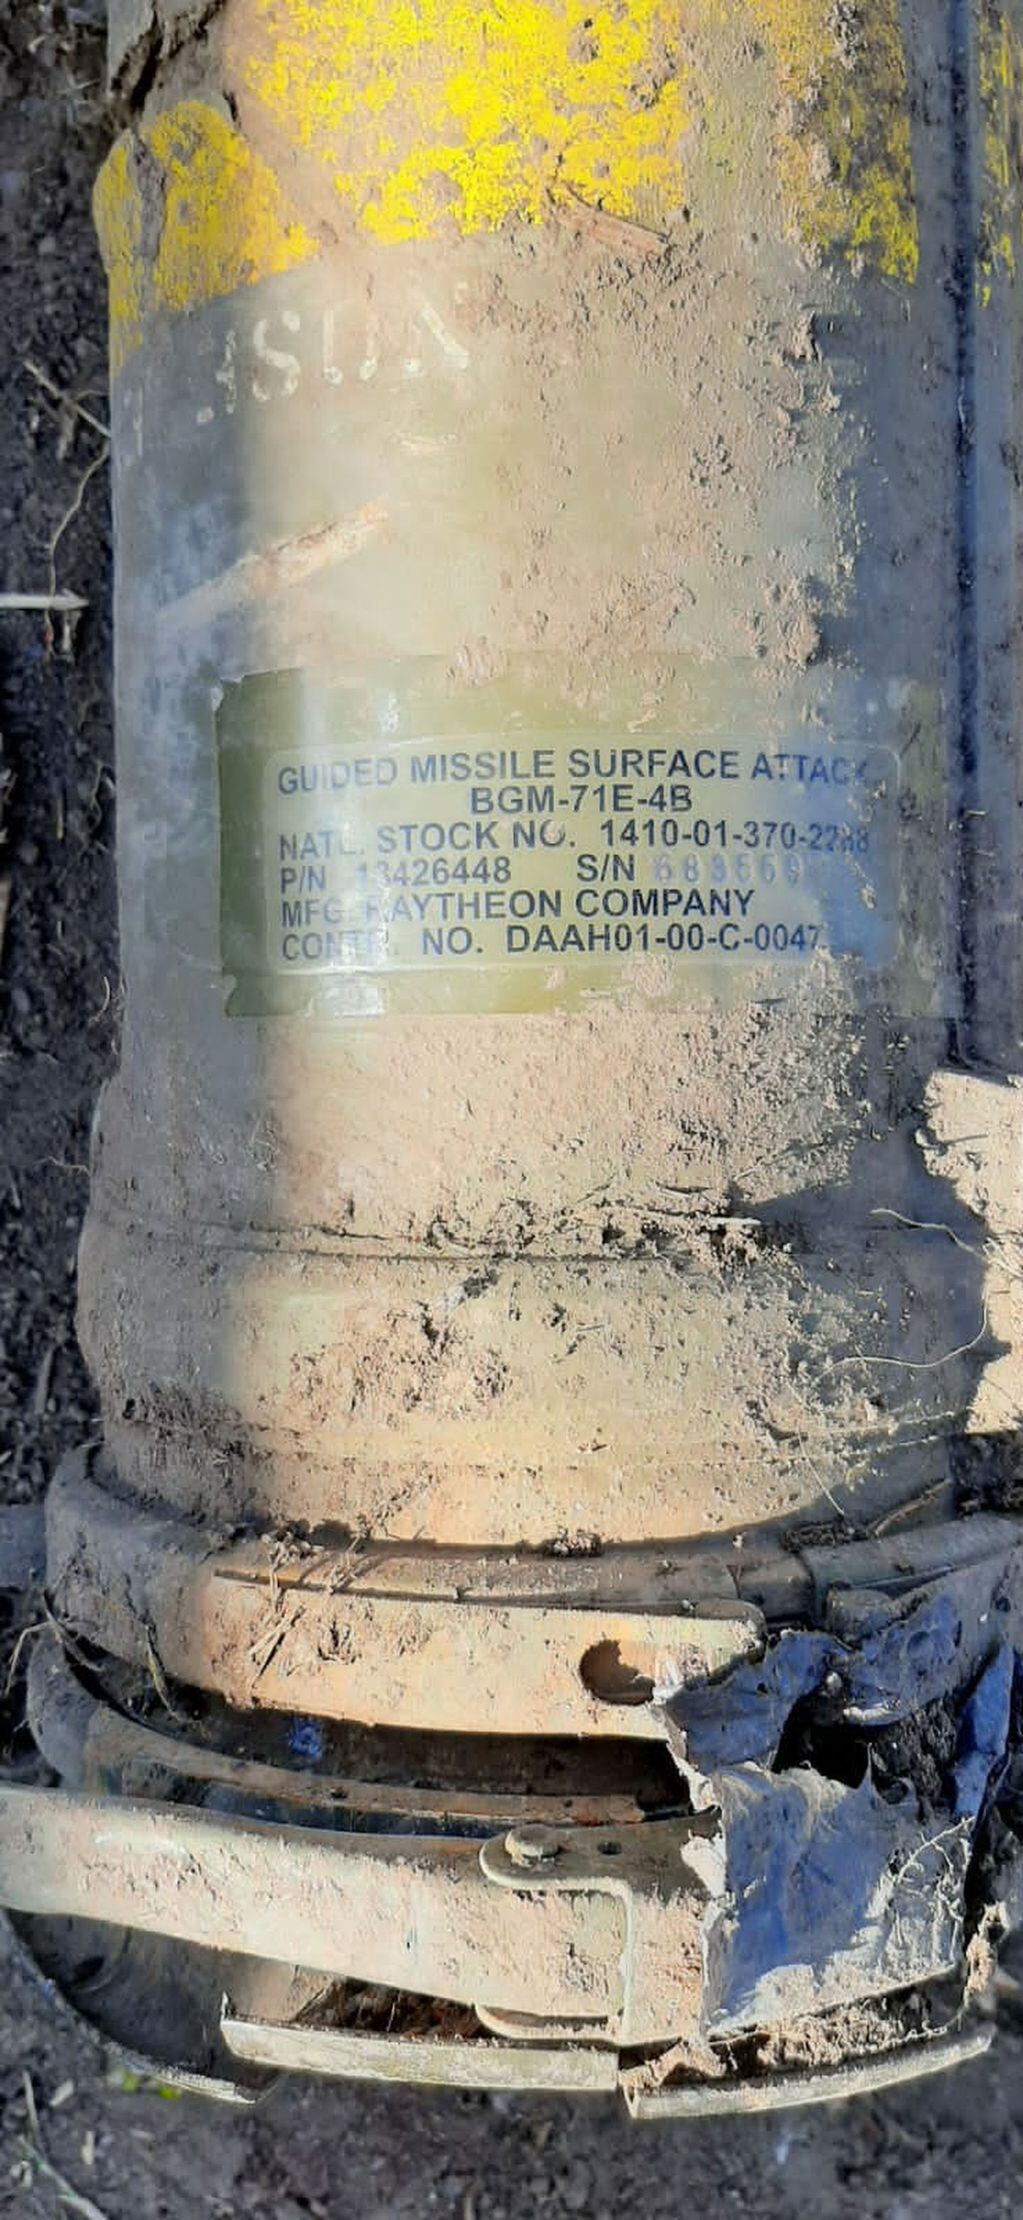 A través del número de serie, la policía pudo determinar que se trataba del mismo misil robado en 2015.